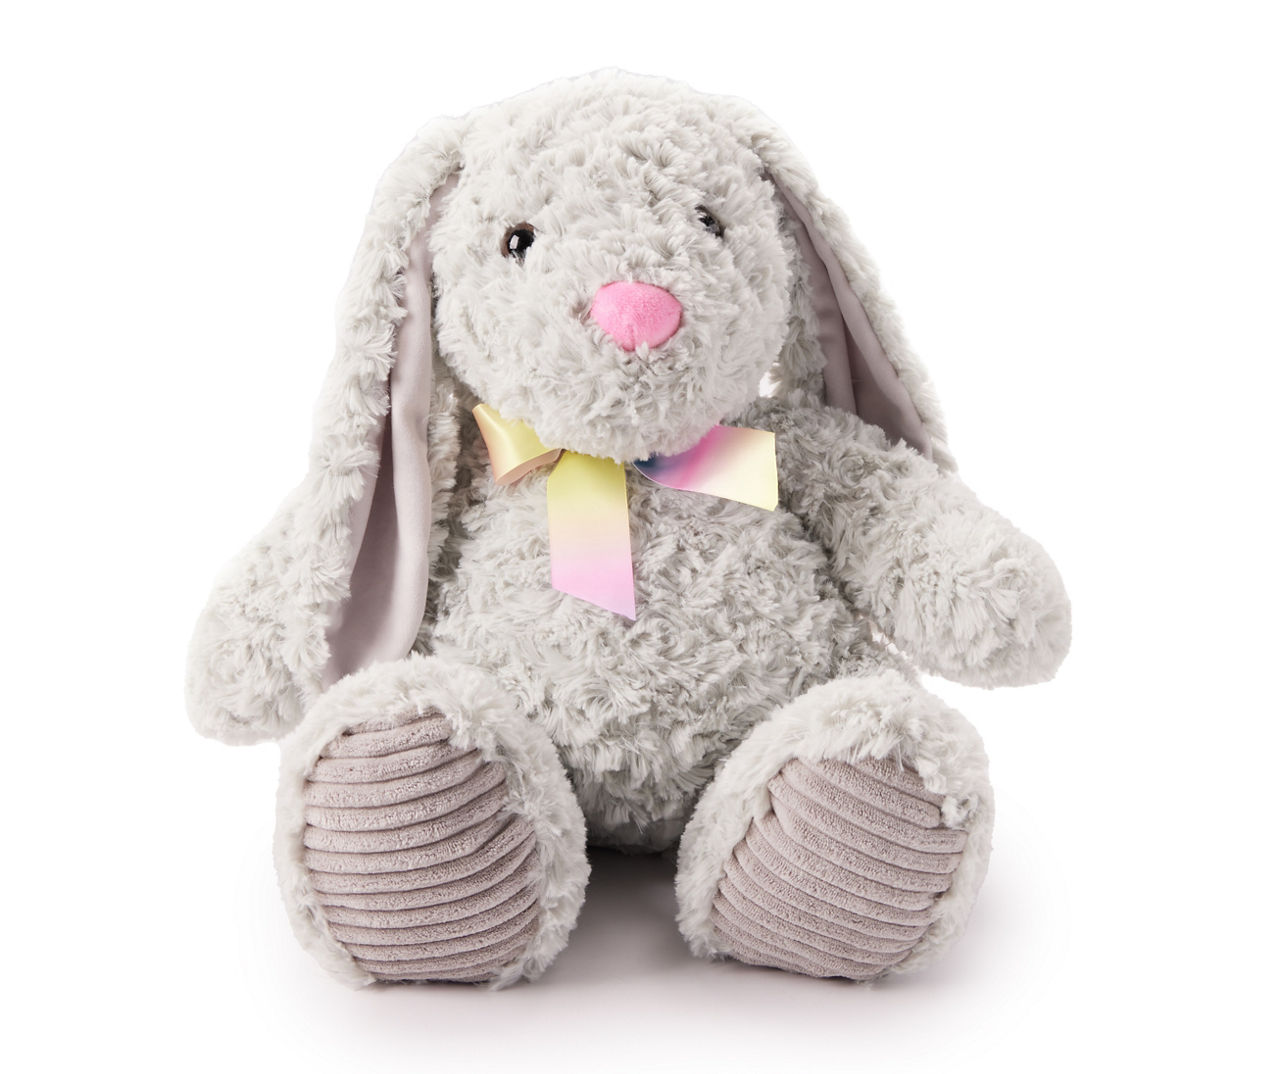 Gray Plush Bunny Easter Basket